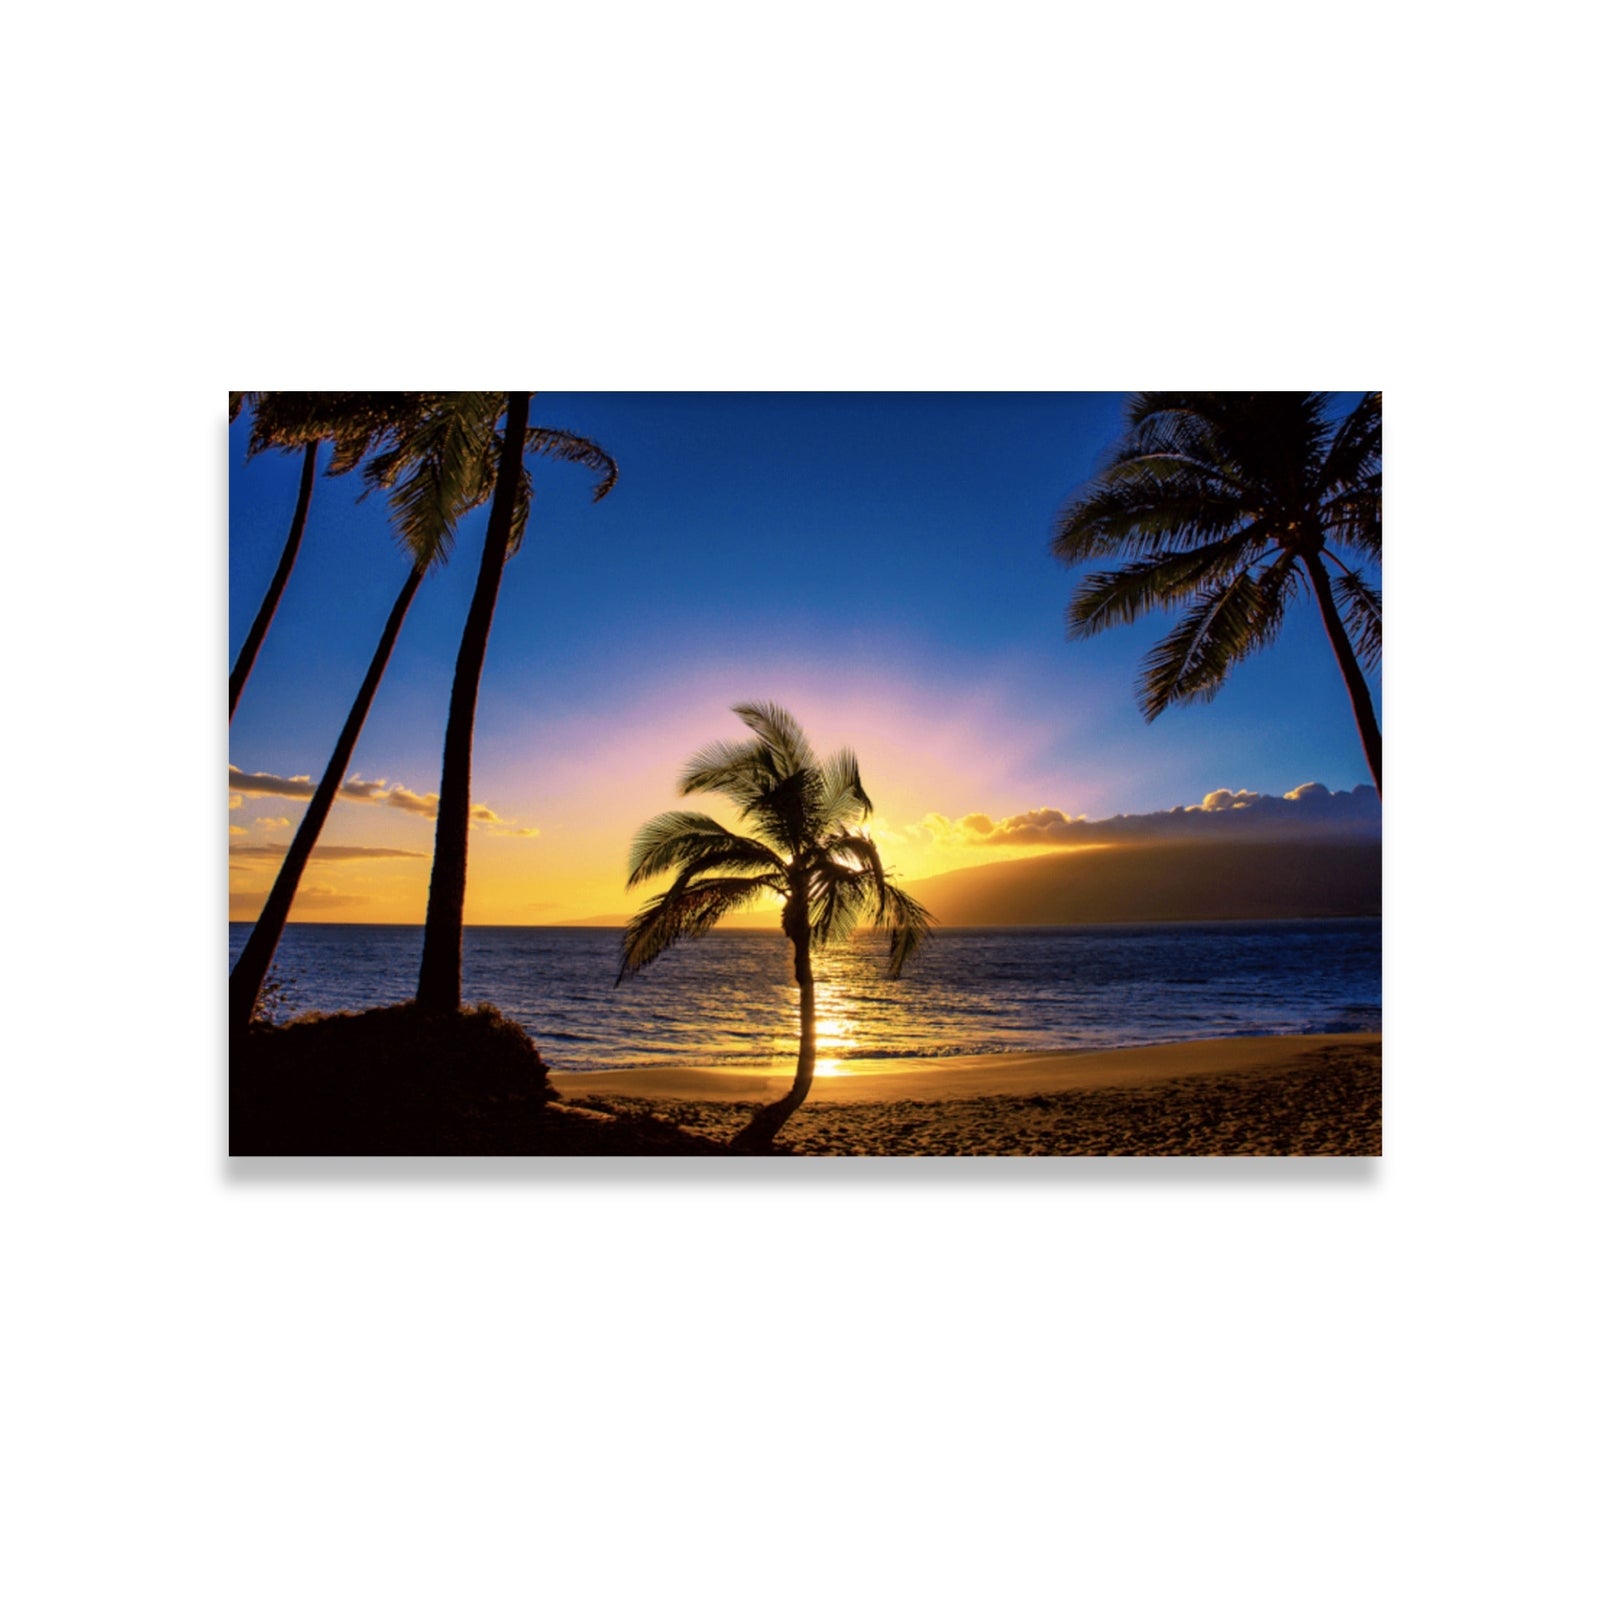 Pop-Up Mākeke - Maui Fine Art - Hawaiian Photo Print - "Sunset Tree" by Gilney Lima